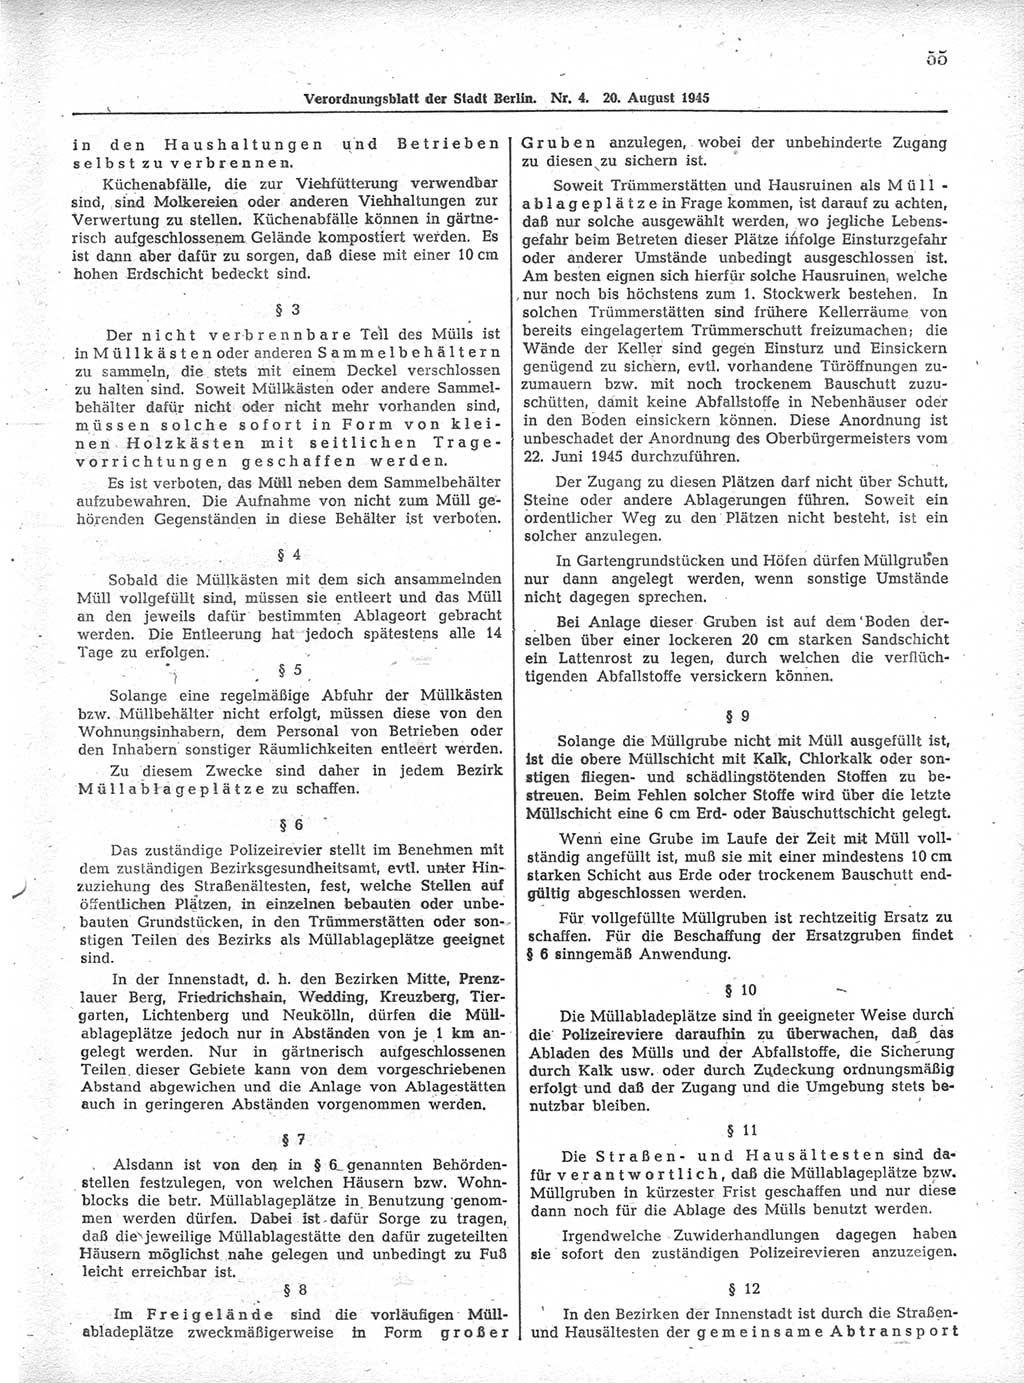 Verordnungsblatt (VOBl.) der Stadt Berlin 1945, Seite 55 (VOBl. Bln. 1945, S. 55)